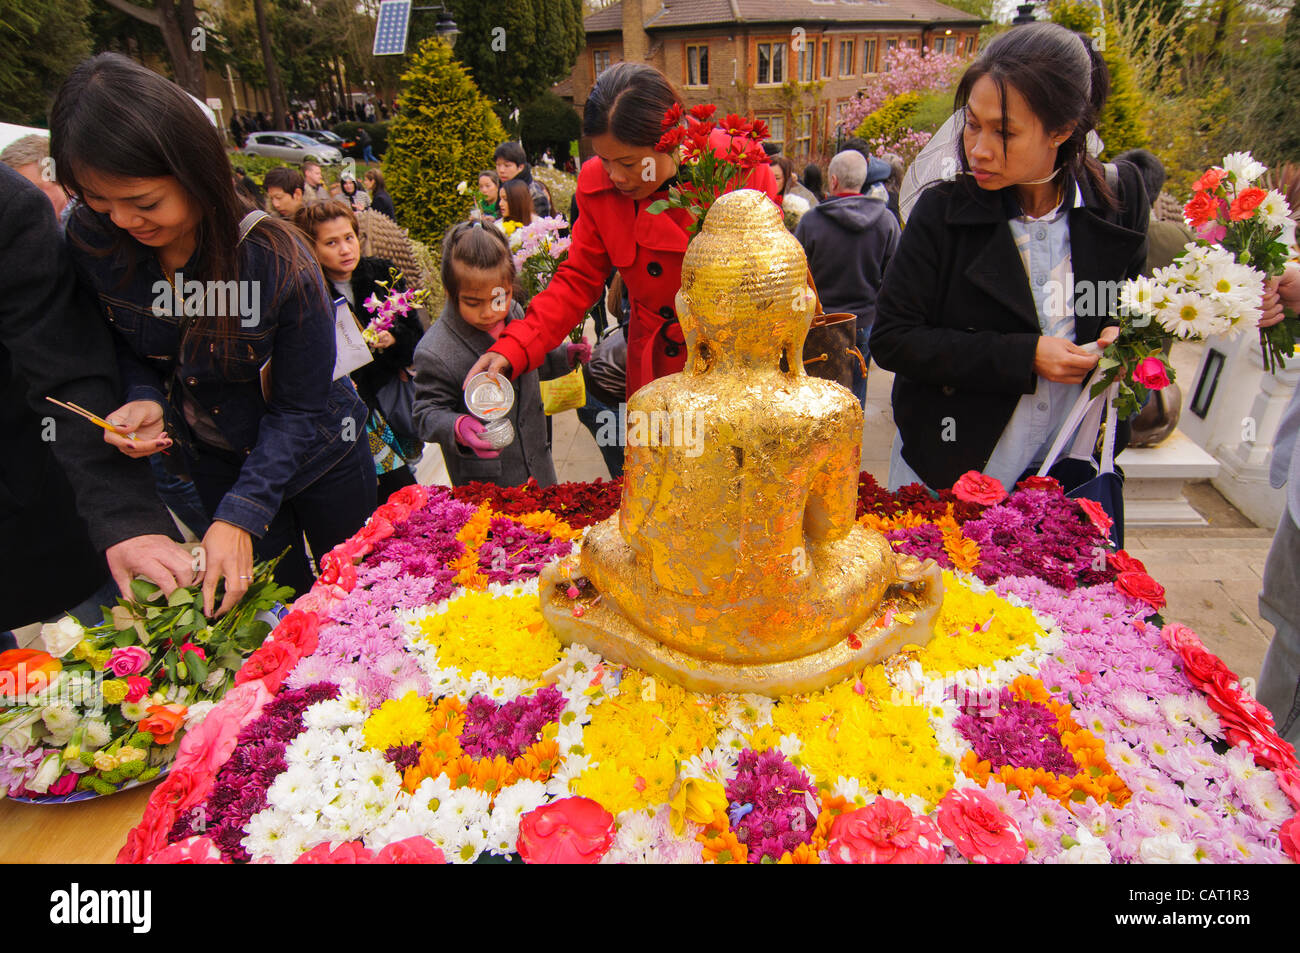 Wimbledon, Londres, Royaume-Uni, 15 avril 2012. À la Thai temple de Wat Buddhapadipa pour célébrer Songkran, Nouvel An thaï, un sacrifice de la feuille d'or est appliqué à une statue de Bouddha. Banque D'Images